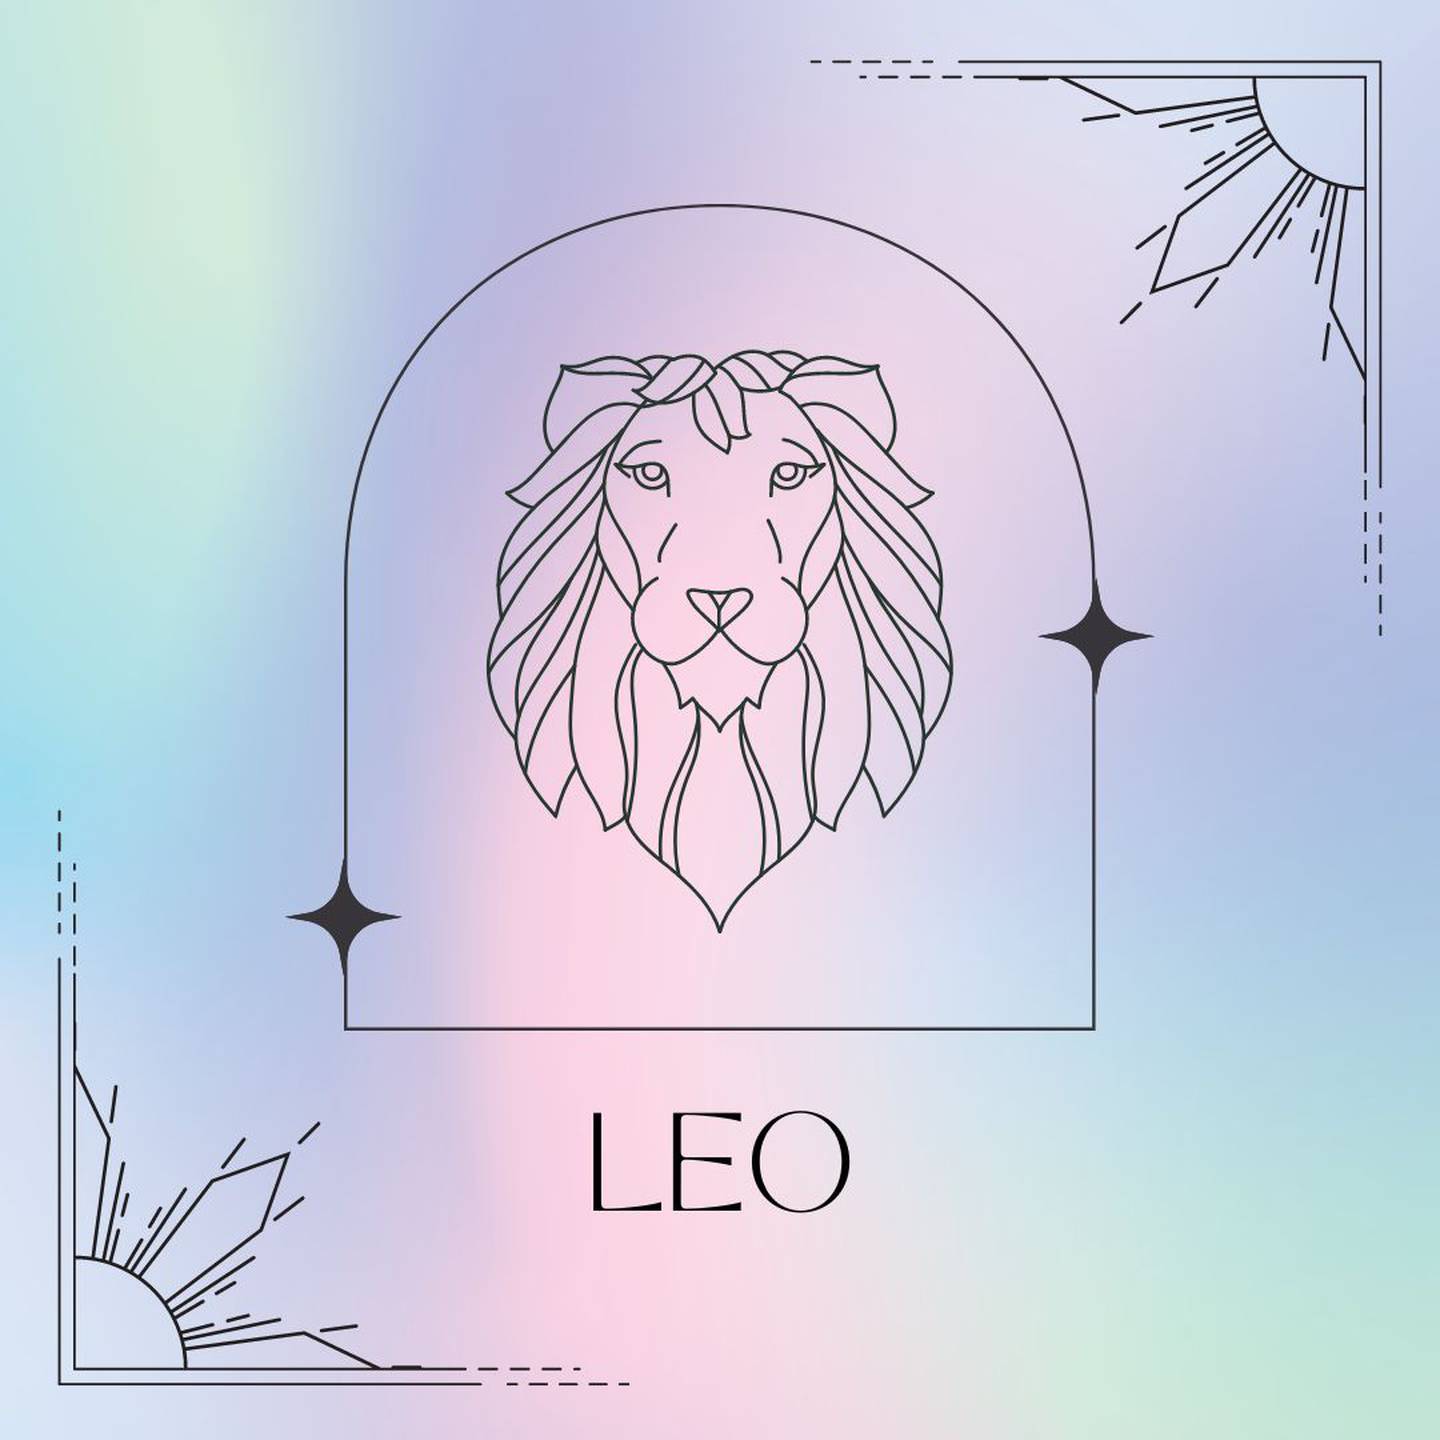 dibujado en negro, el símbolo de Leo aparece enmarcado sobre un fondo de colores suaves pastel.